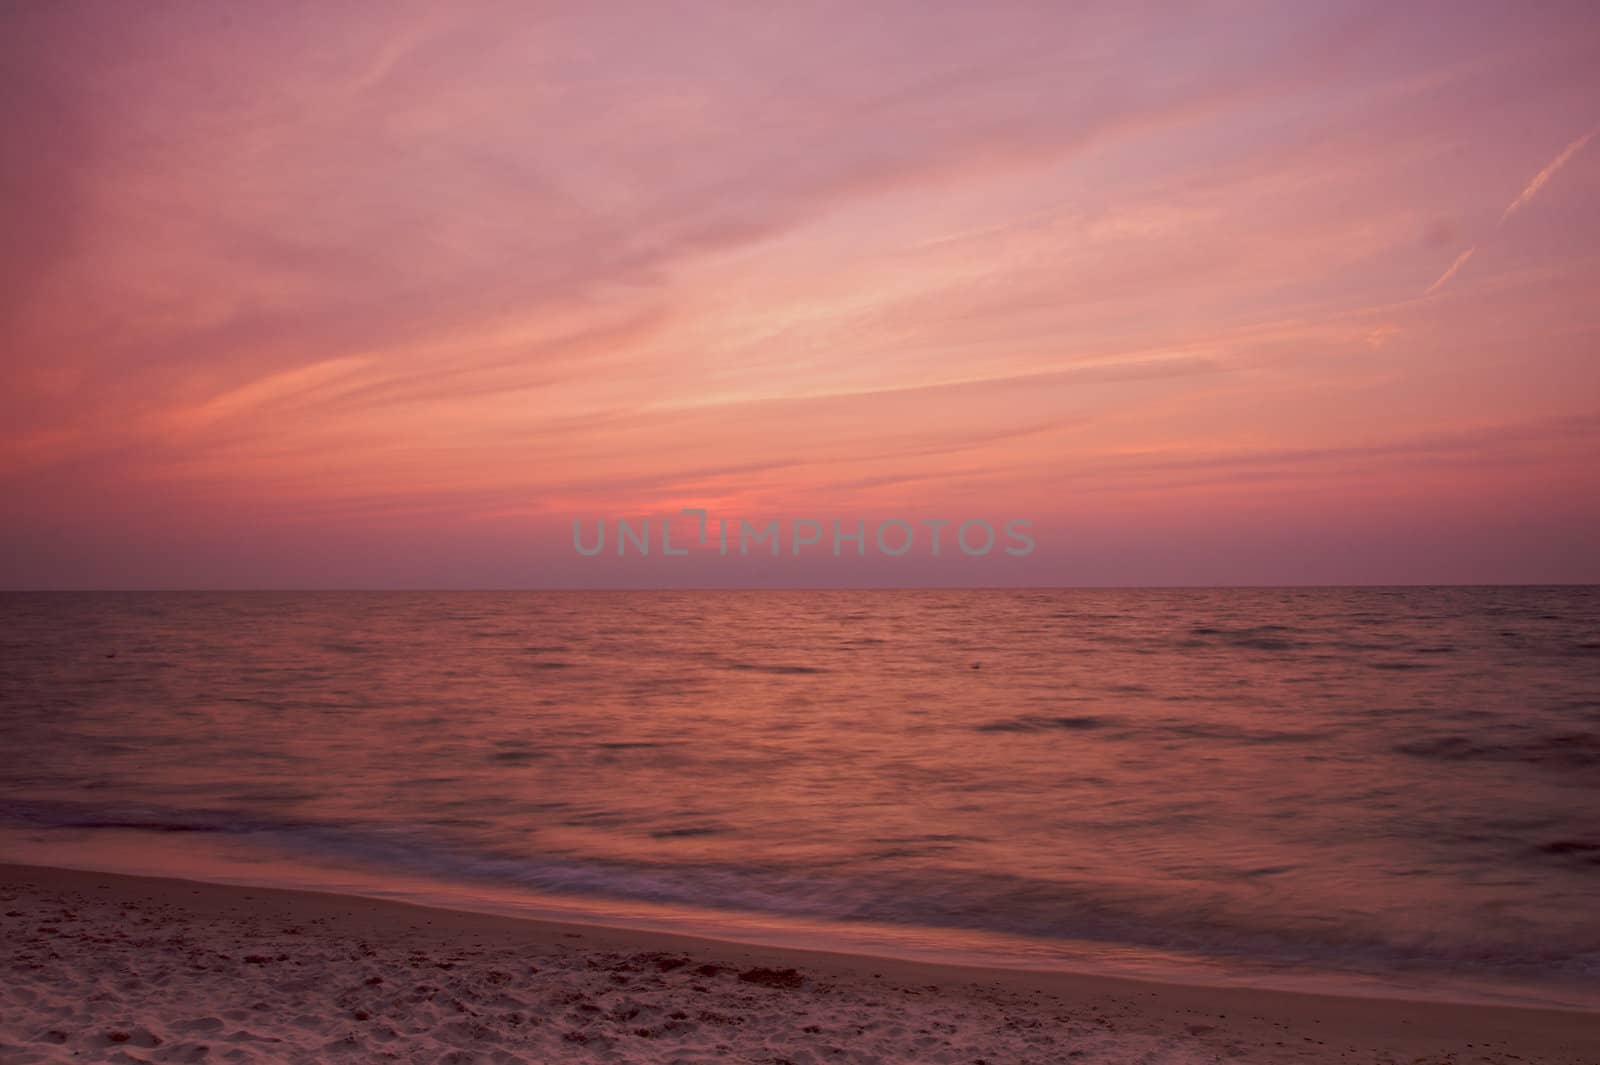 Lake Michigan Sunset with beach by bobkeenan